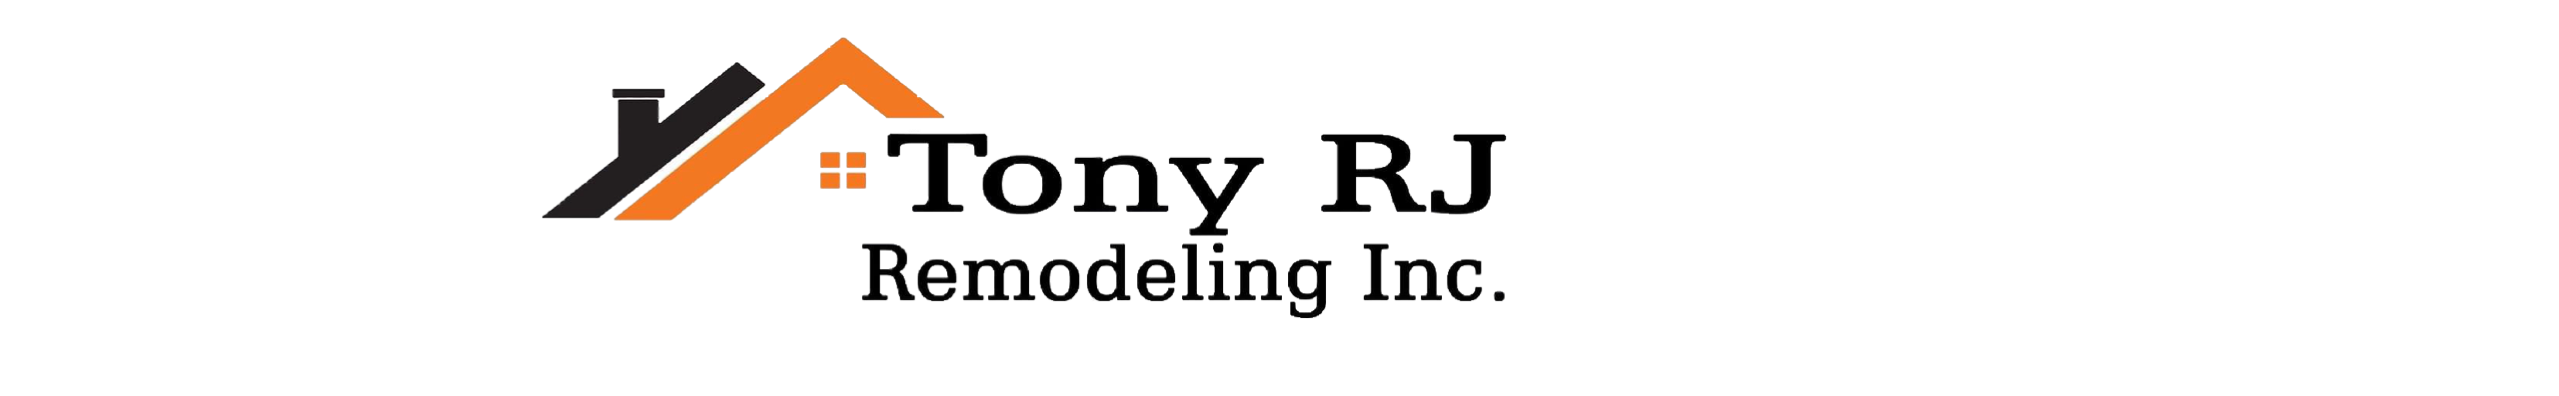 Tony RJ Remodeling Inc.